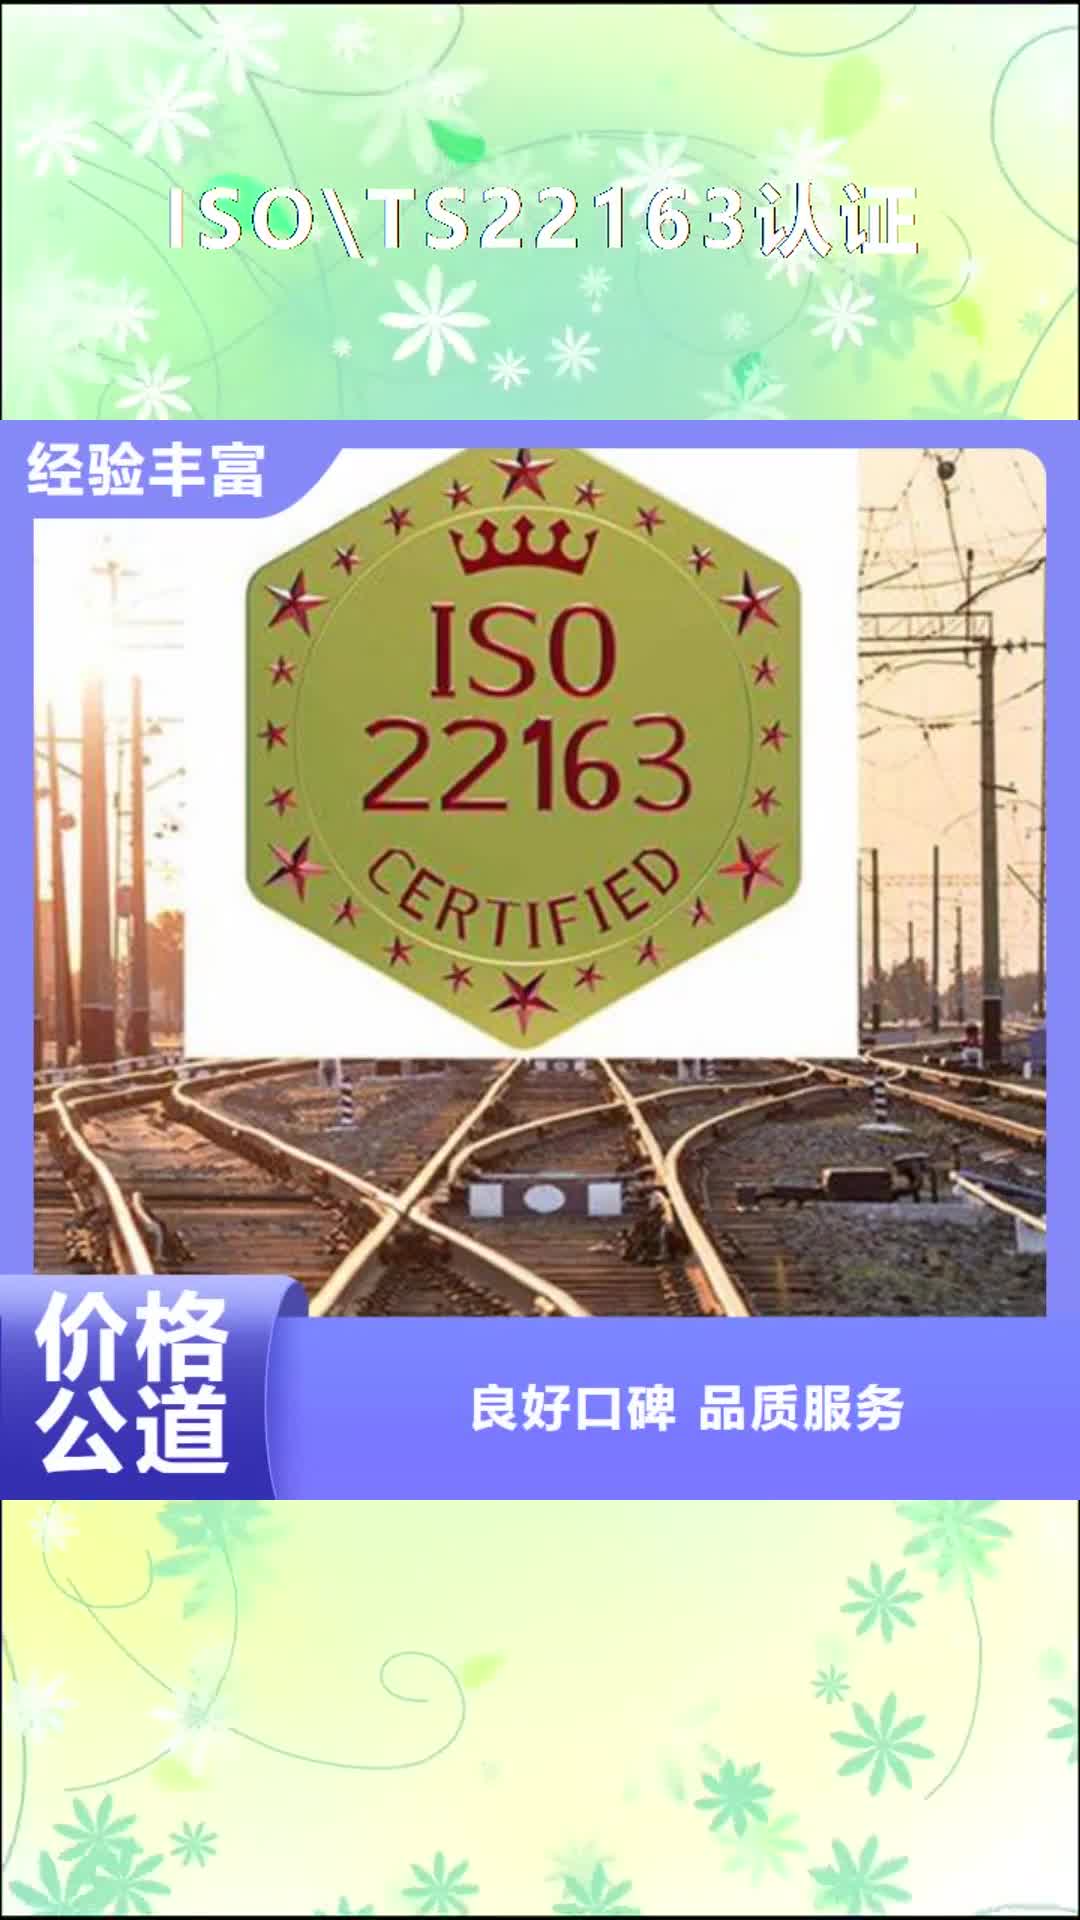 【赤峰 ISO\TS22163认证,ISO13485认证专业】